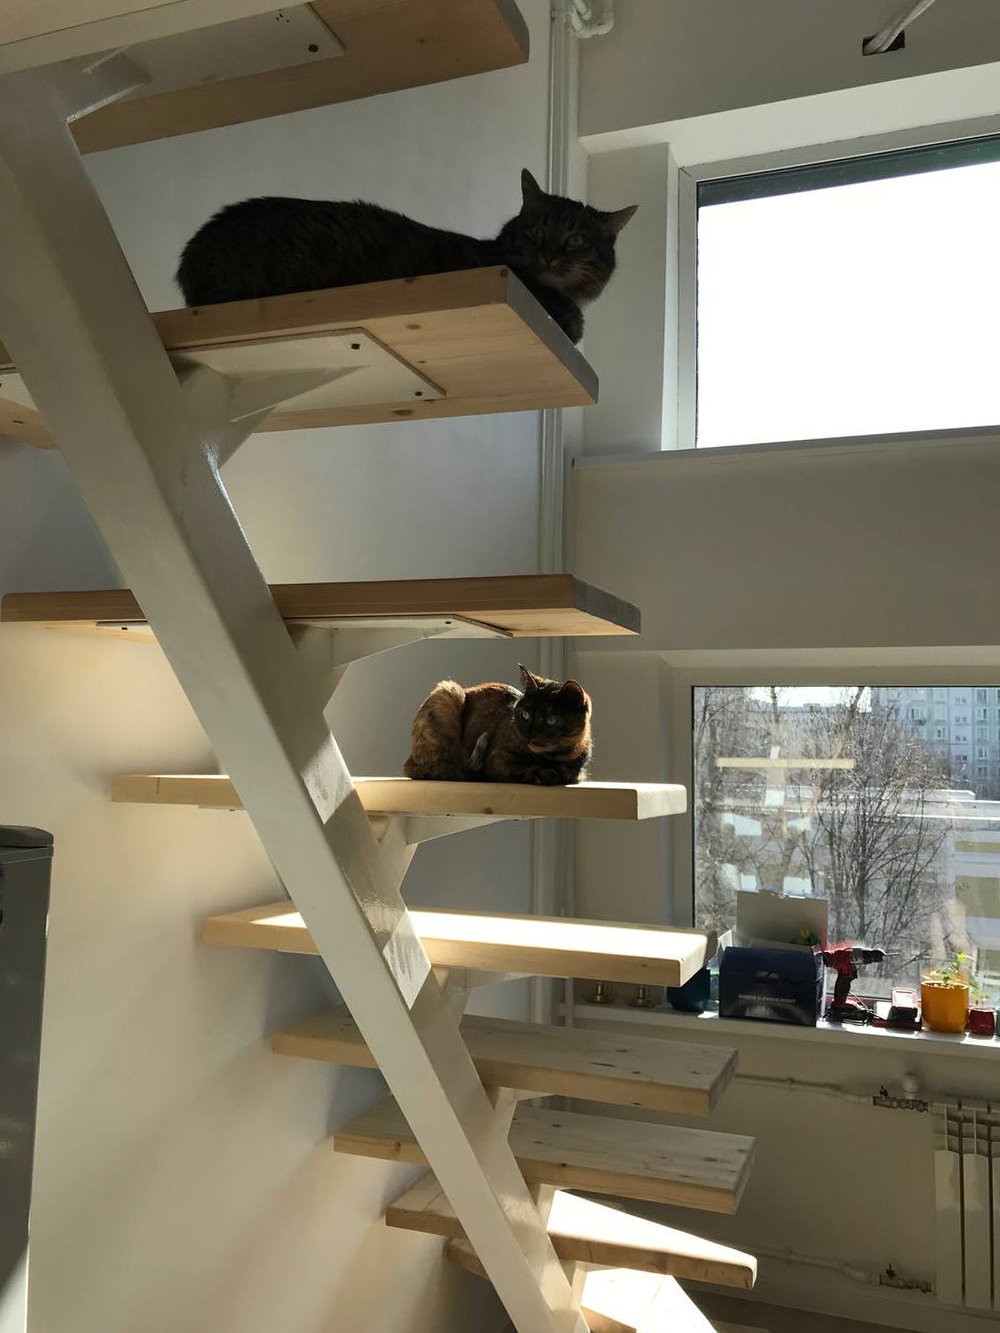 Гостям страшно подниматься по этой лестнице без перил, но мы и кошки уже привыкли. Тем не менее планируем на всякий случай прикрепить перила к стене